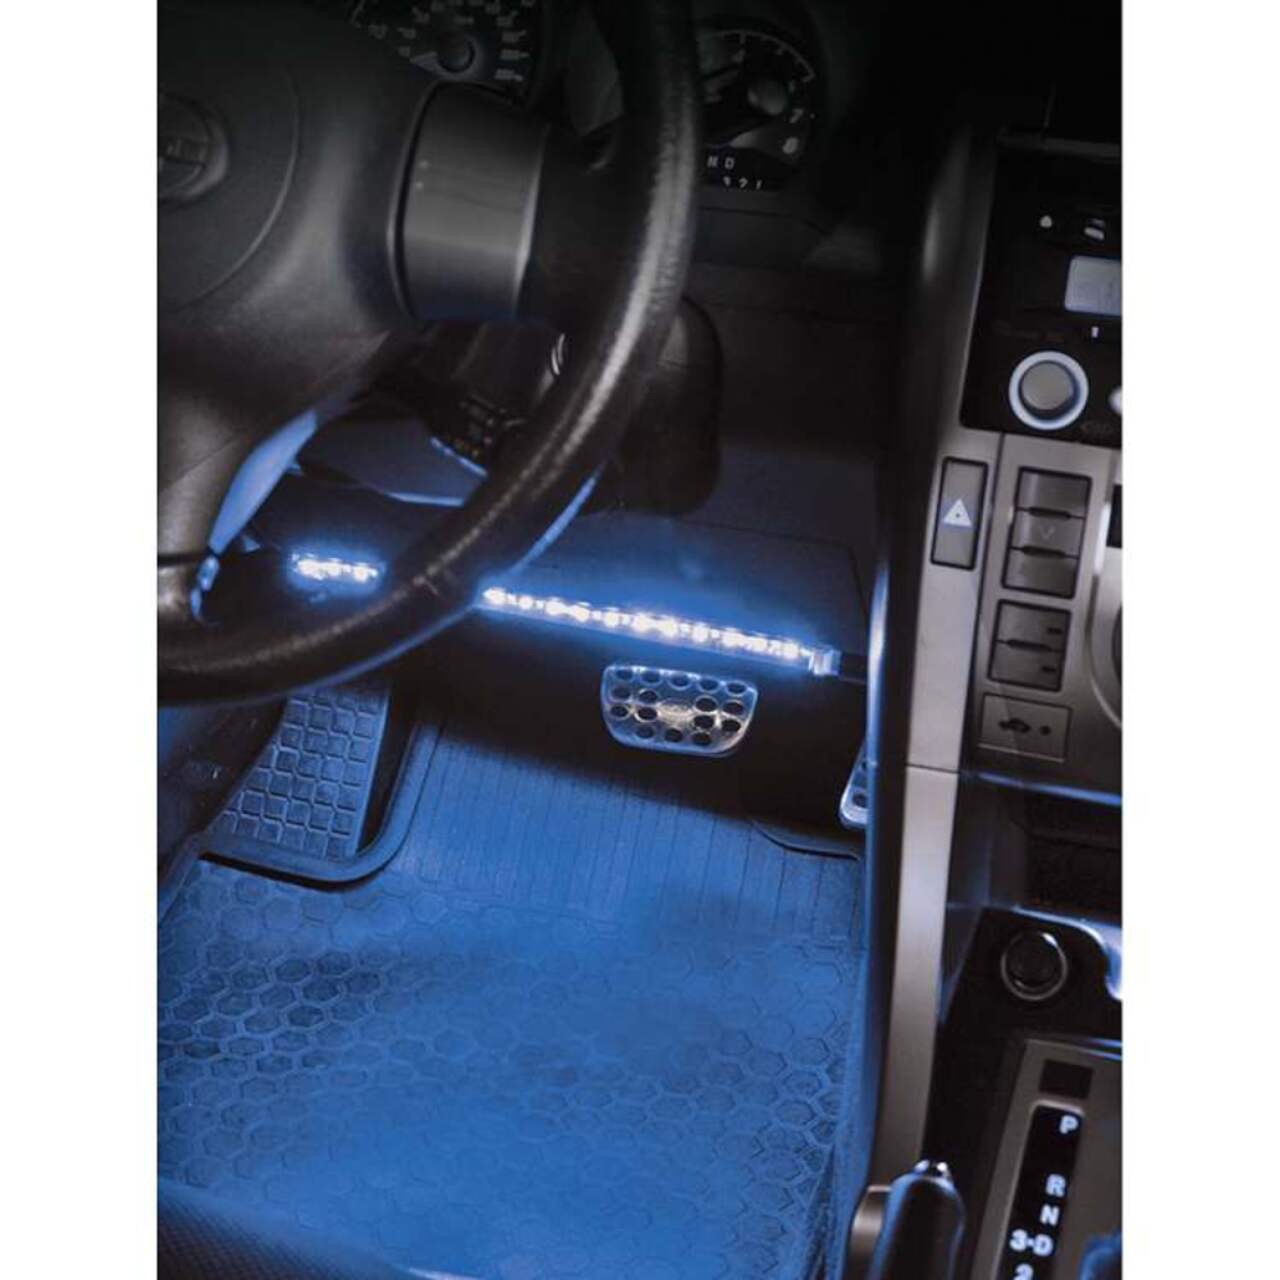 Acheter Bande lumineuse LED Flexible pour sous-corps de voiture